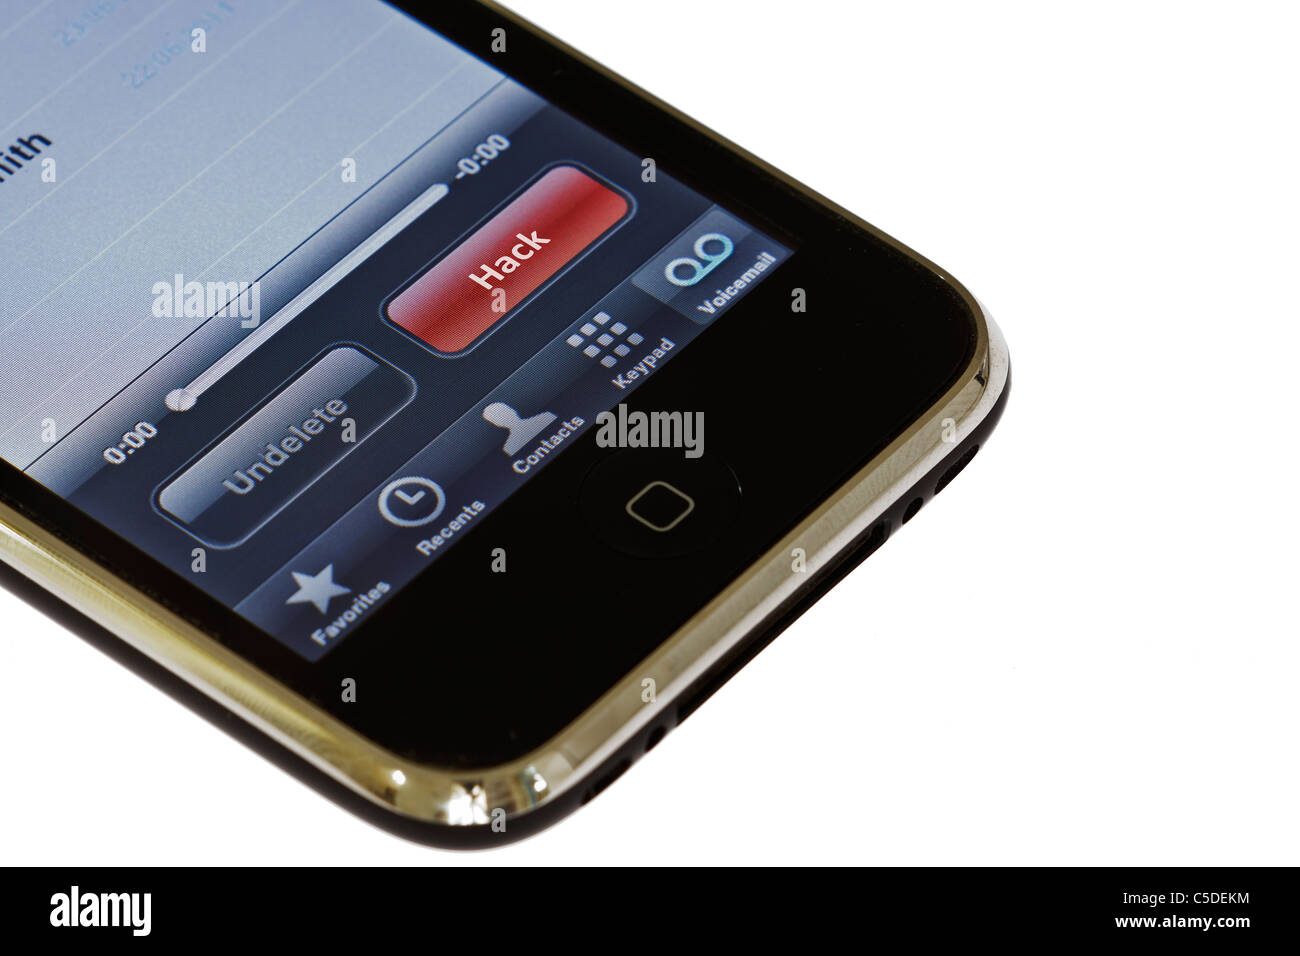 Telefono cellulare si accede alla segreteria con un pulsante contrassegnato 'hack' Foto Stock